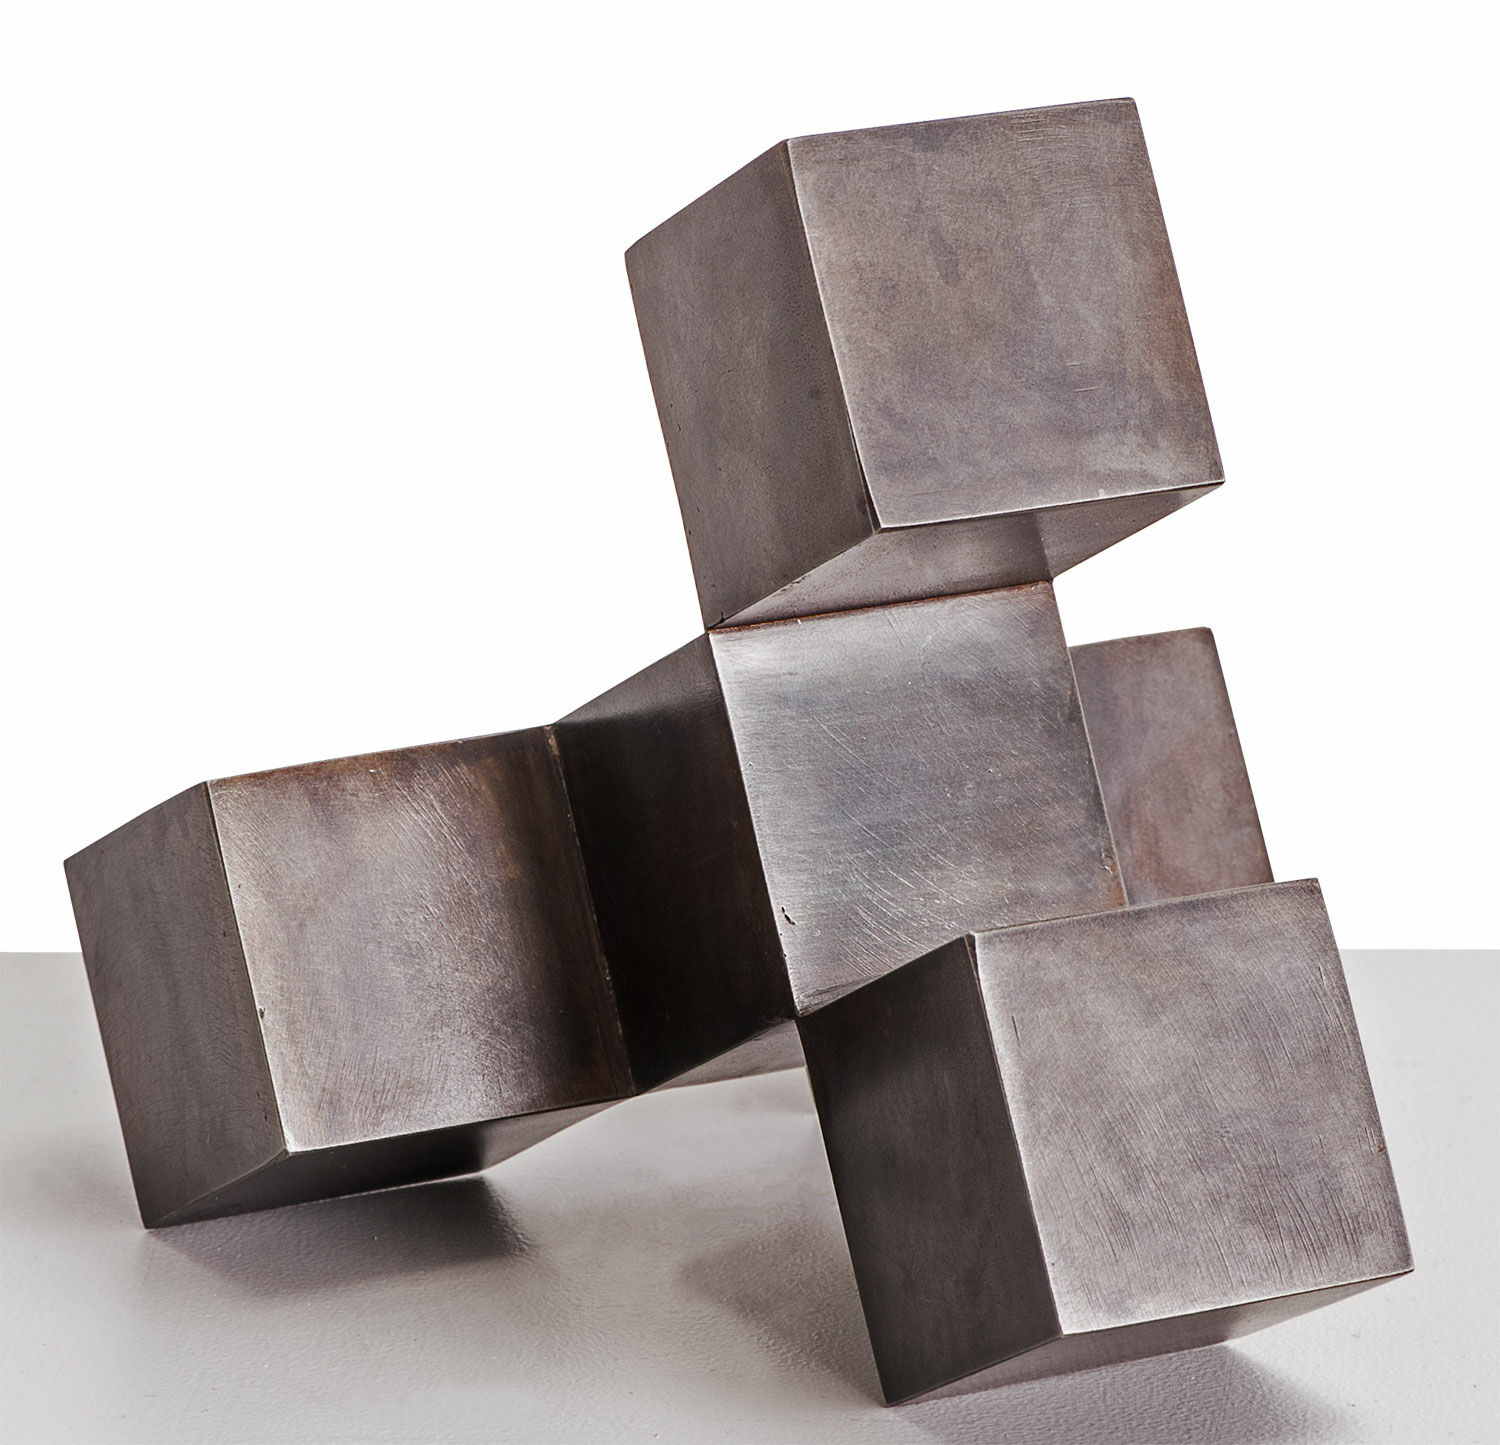 Steel sculpture "CUBECUBE" (2010) by Stephan Siebers